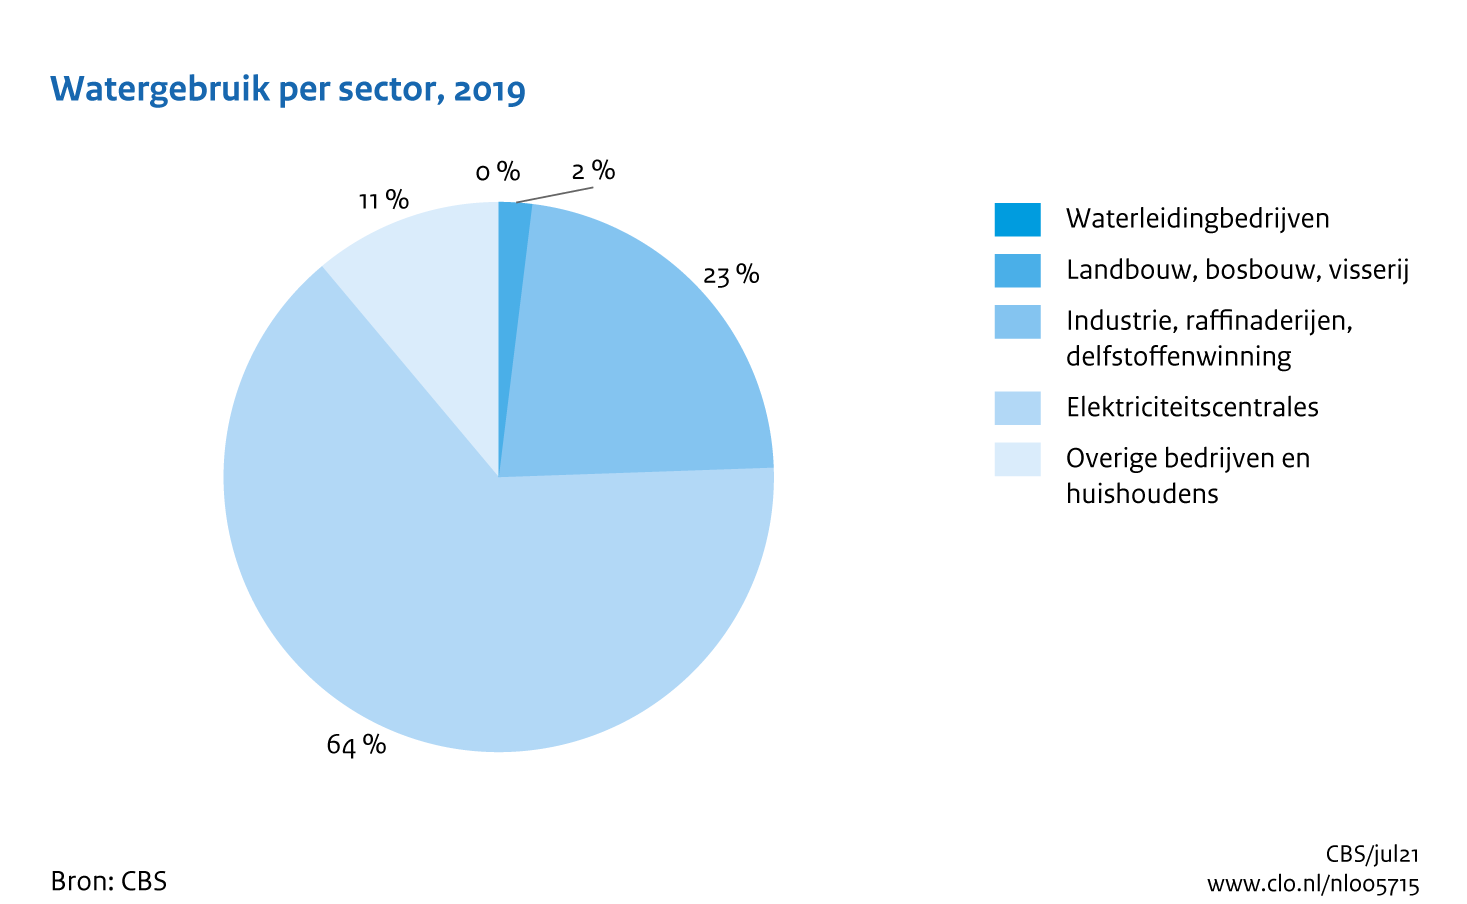 Figuur Watergebruik sectoren 2019. In de rest van de tekst wordt deze figuur uitgebreider uitgelegd.